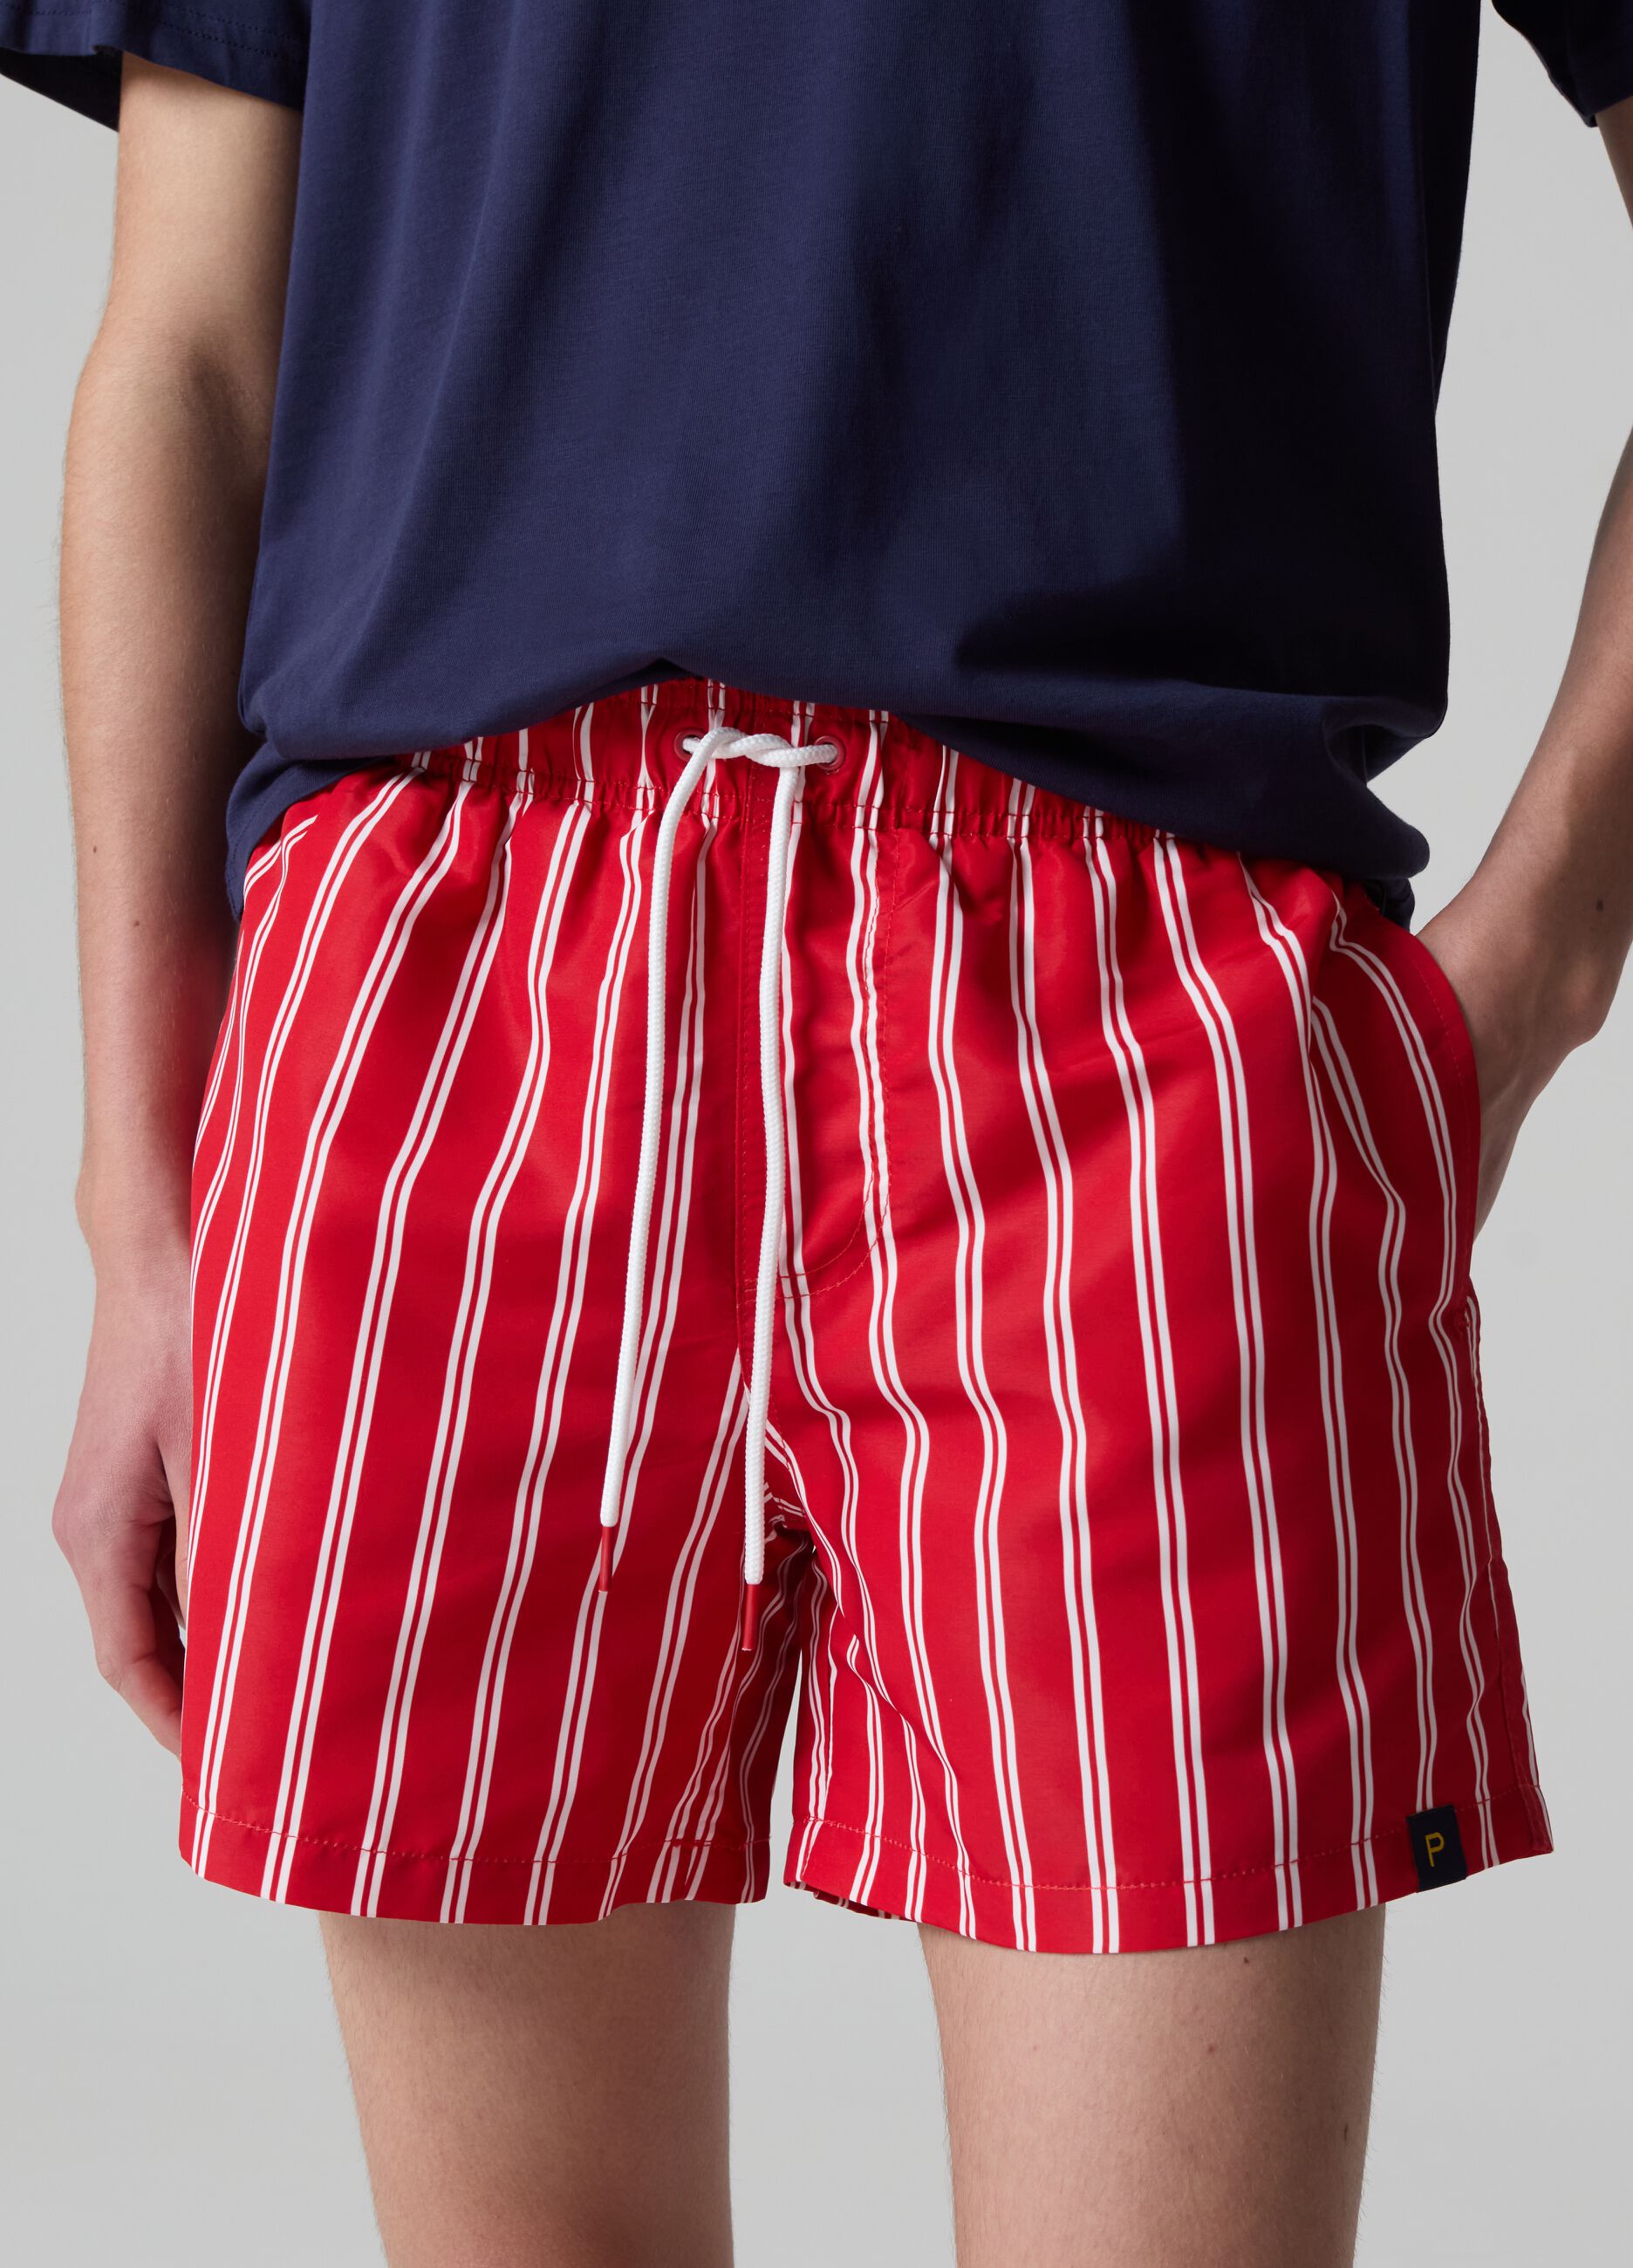 Bermuda swim shorts with fine stripes